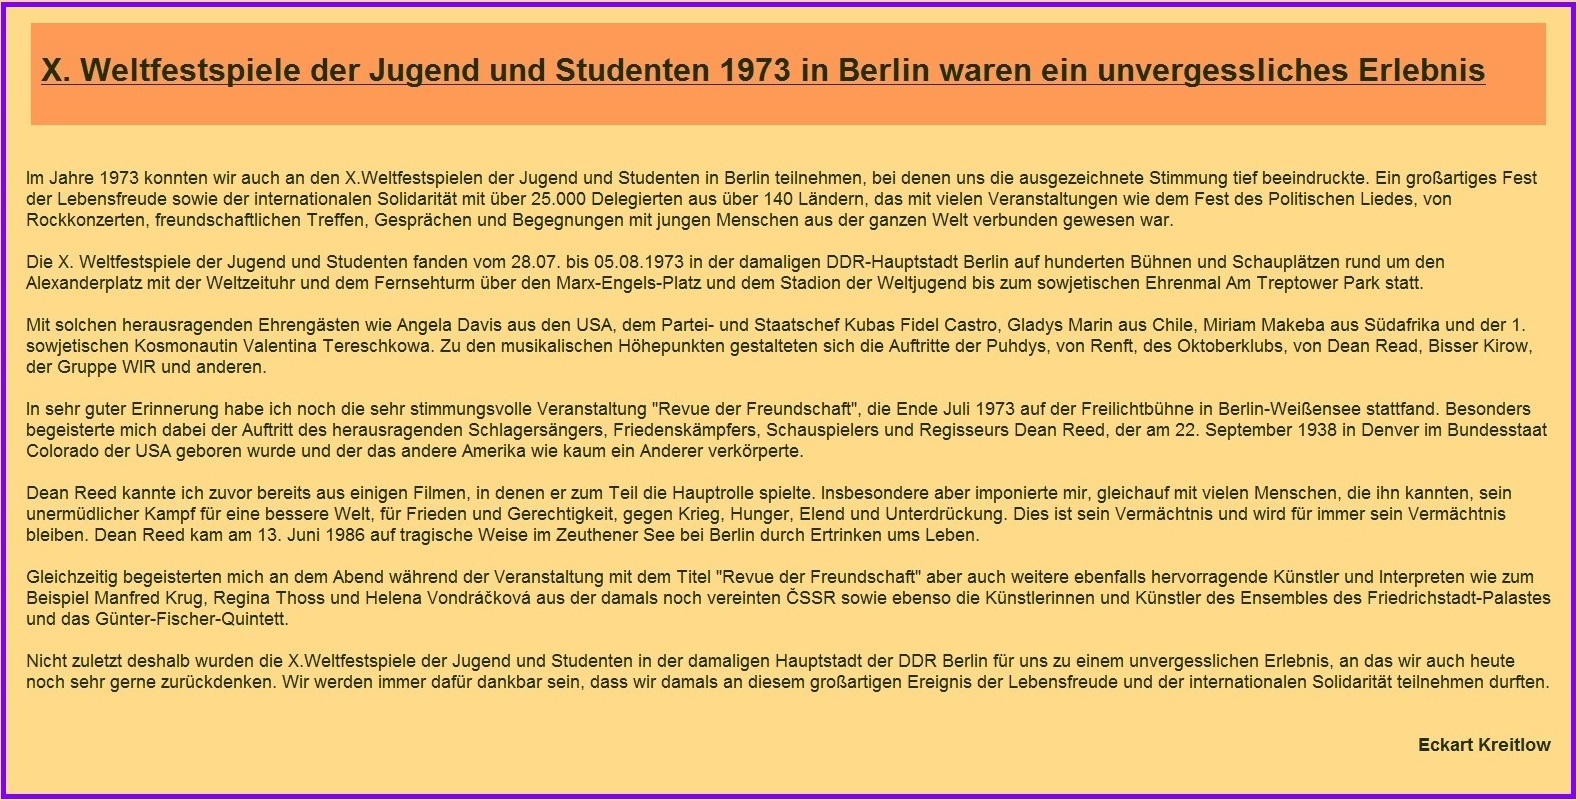 Erinnerungen an die X. Weltfestspiele der Jugend und Studenten 1973 in der damaligen Hauptstadt der DDR Berlin - DDR-Erinnerungen - Ostsee-Rundschau.de - Neue Unabhängige Onlinezeitungen (NUOZ)